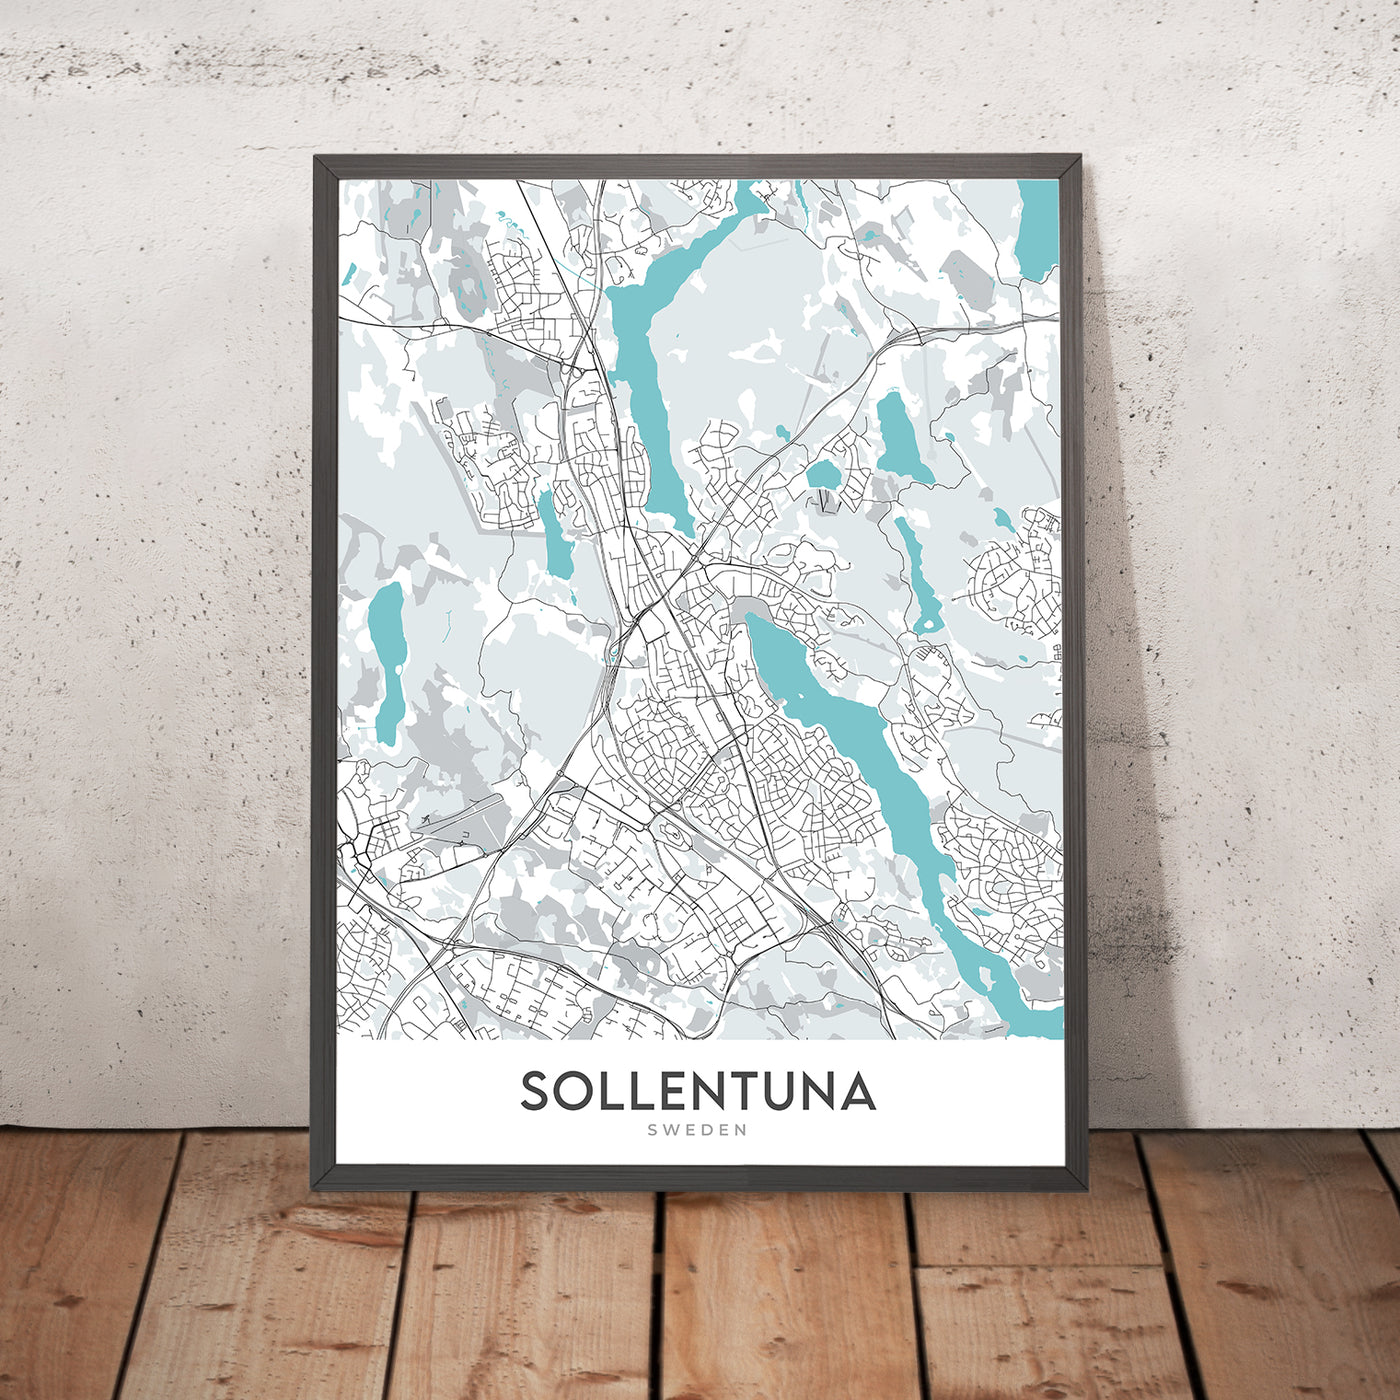 Moderner Stadtplan von Sollentuna, Schweden: Sollentuna, Tureberg, Häggvik, E4, E18